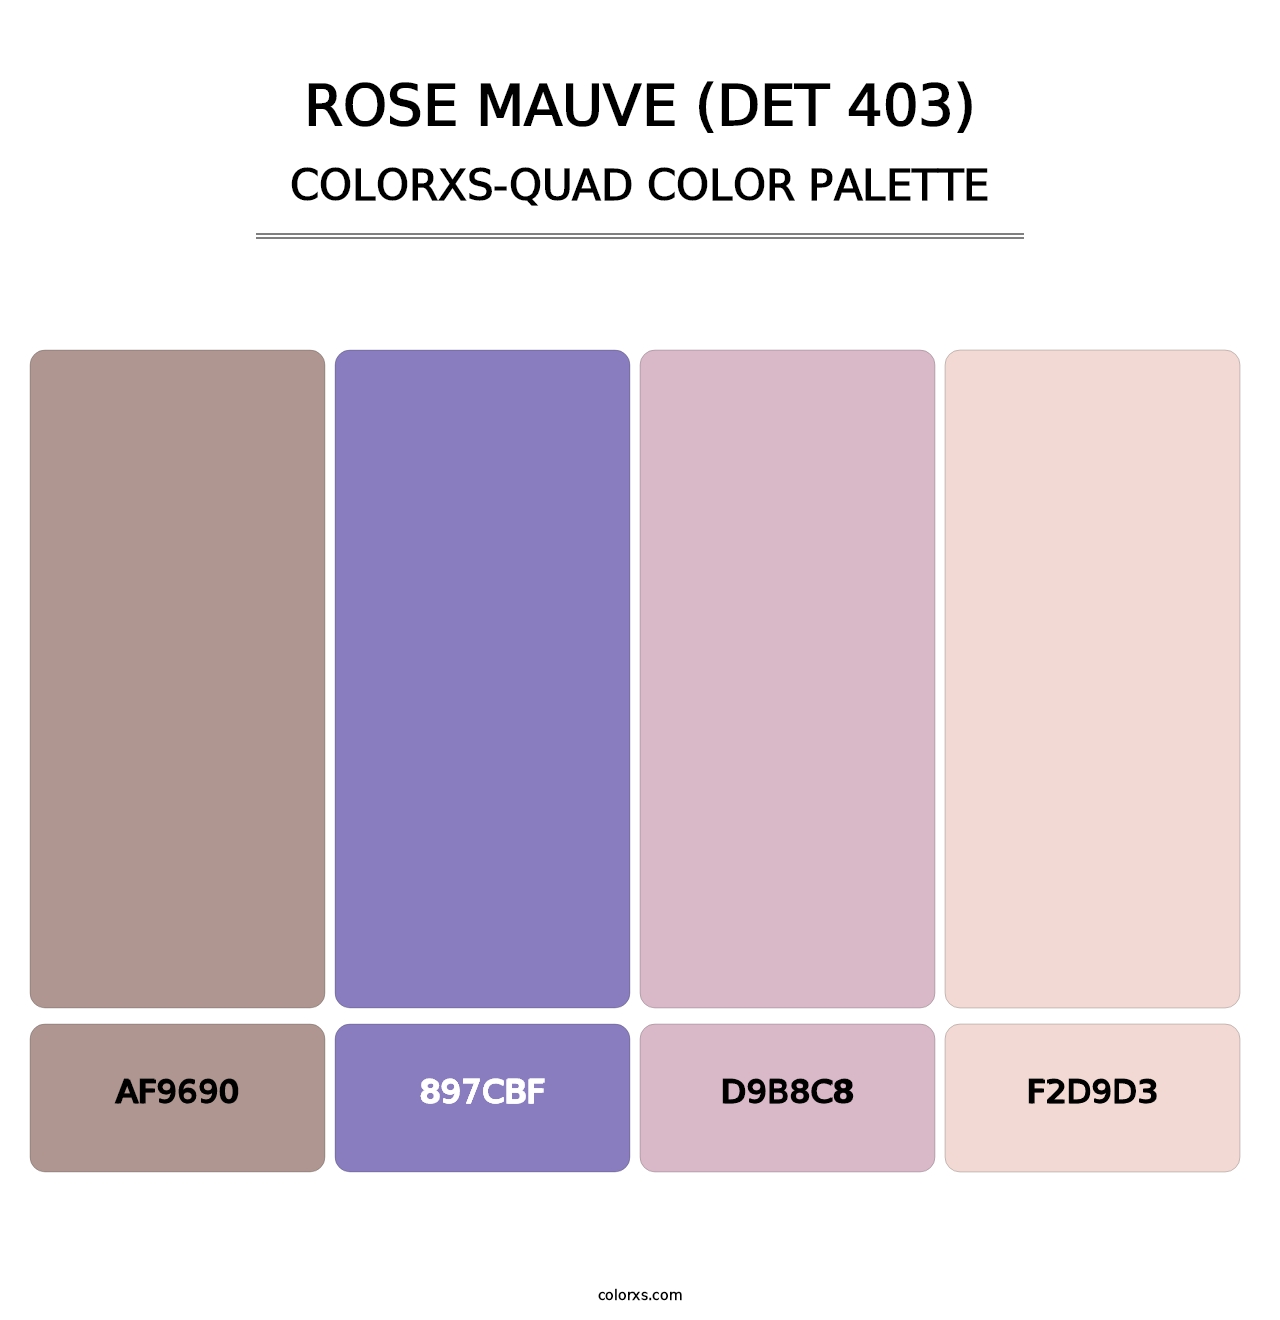 Rose Mauve (DET 403) - Colorxs Quad Palette